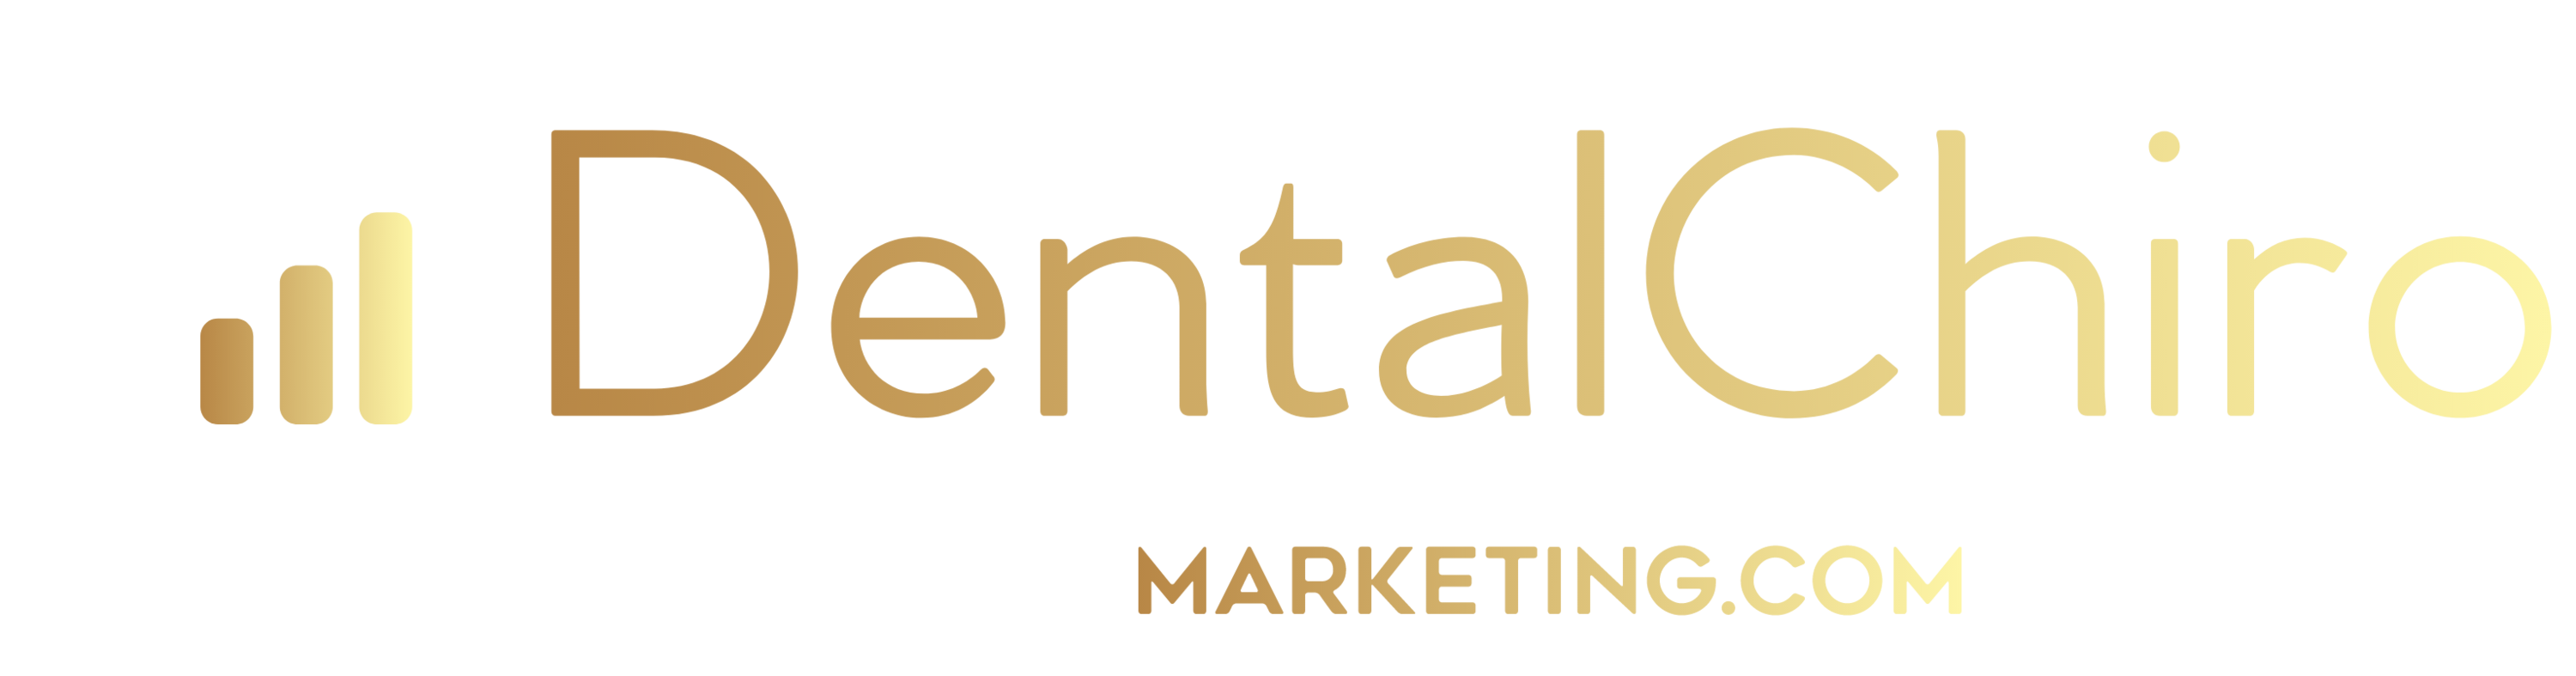 Company logo of Dental Chiro Marketing